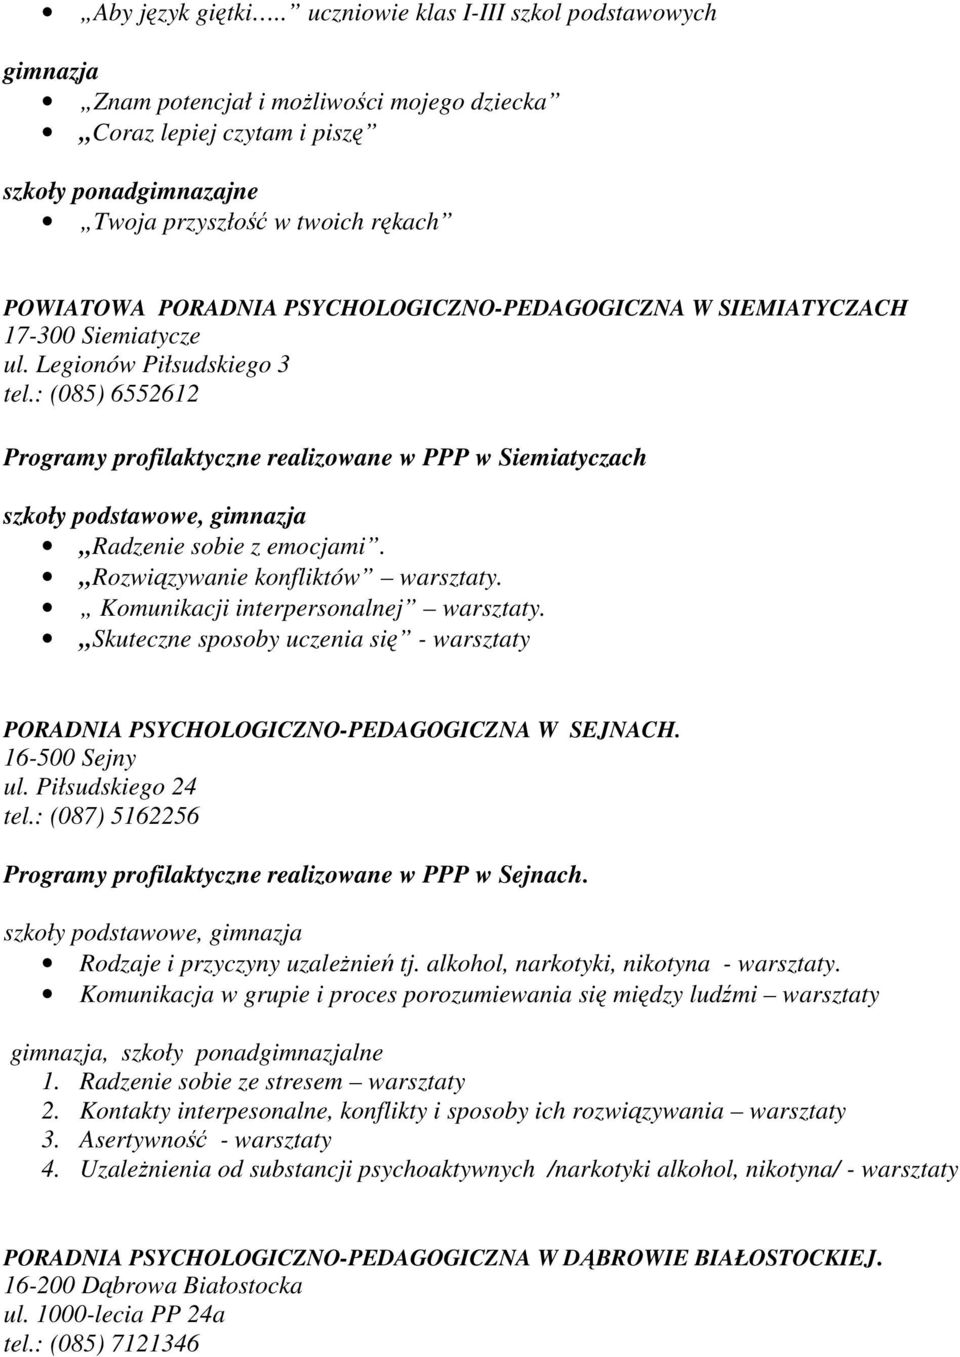 PSYCHOLOGICZNO-PEDAGOGICZNA W SIEMIATYCZACH 17-300 Siemiatycze ul. Legionów Piłsudskiego 3 tel.: (085) 6552612 Programy profilaktyczne realizowane w PPP w Siemiatyczach, Radzenie sobie z emocjami.